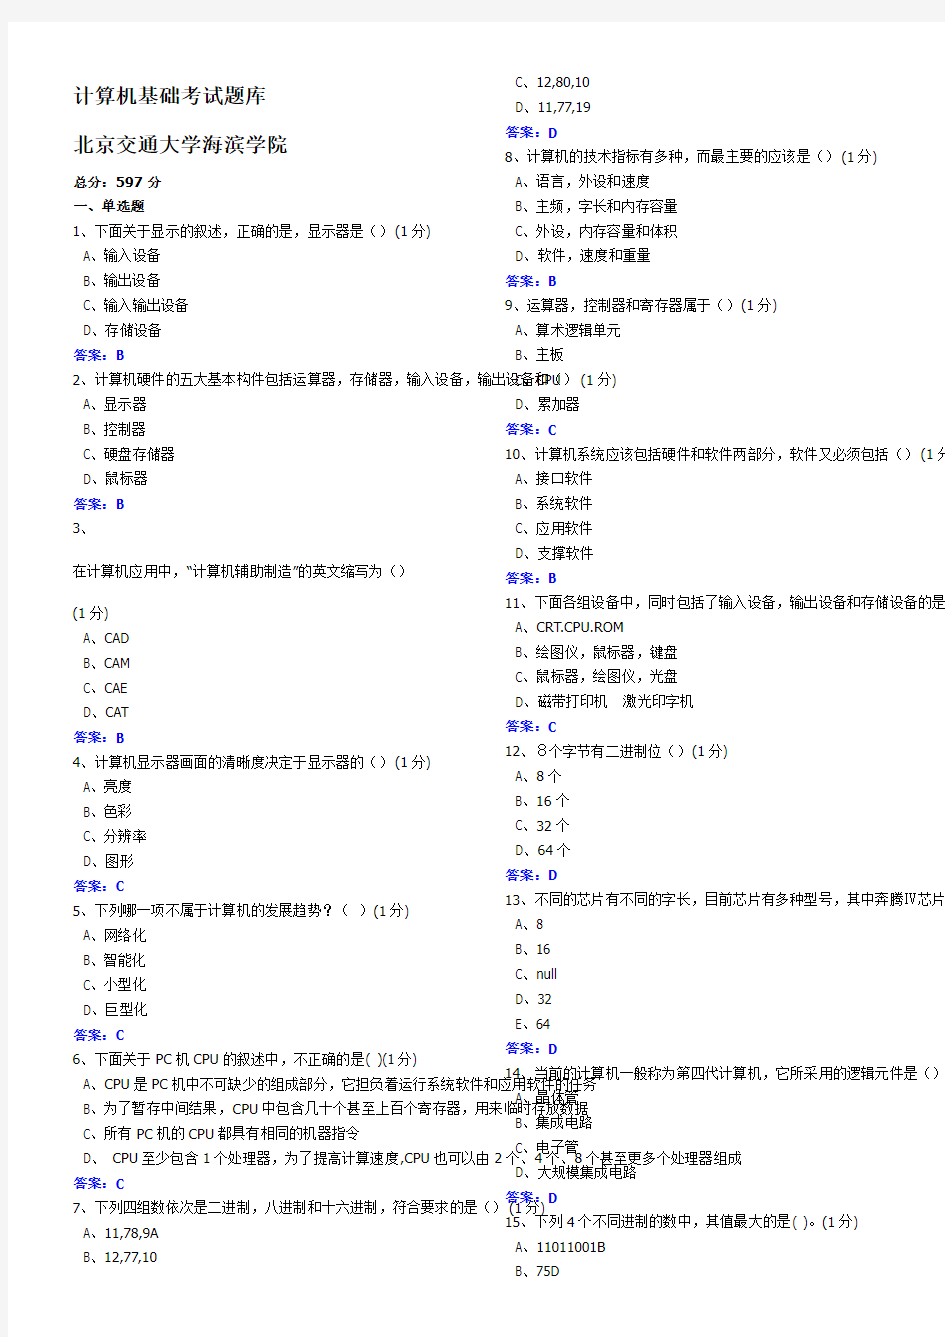 北京交通大学海滨学院大学计算机基础考试题库(全)